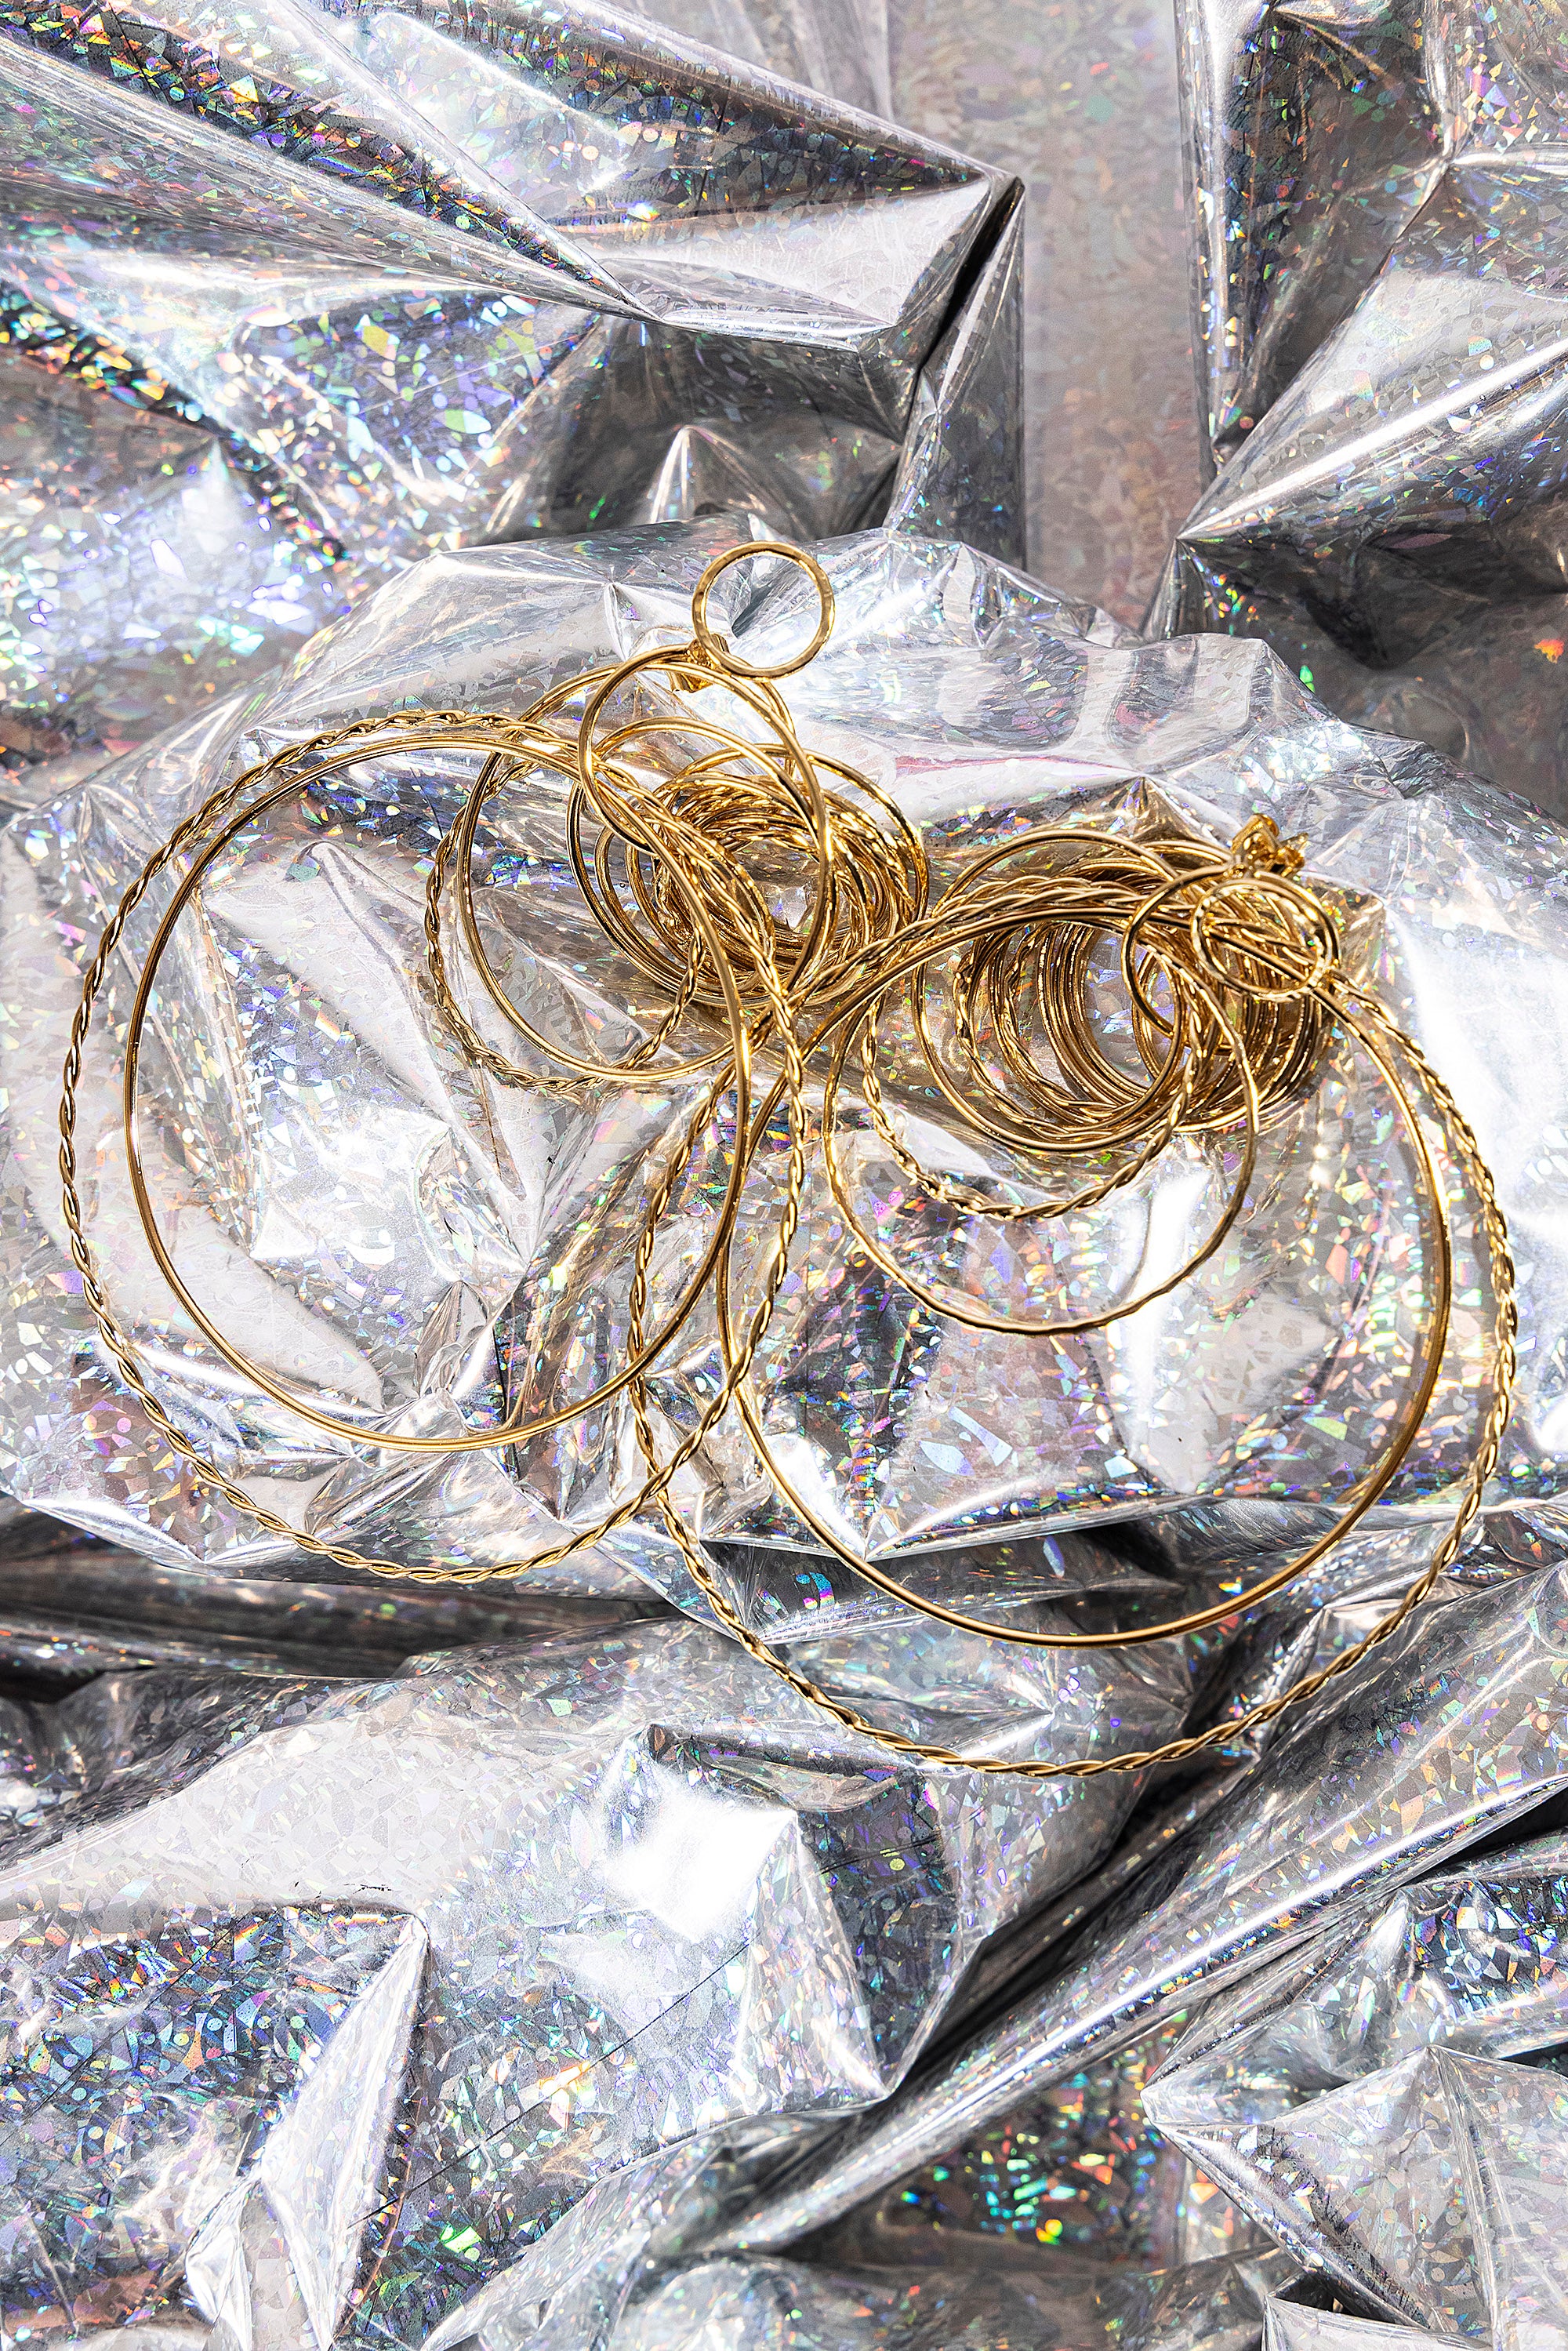 Boucles d'Oreilles Arizona Grandes - Bdm Studio dorées à l'or fin créatrice indépendante Misericordia